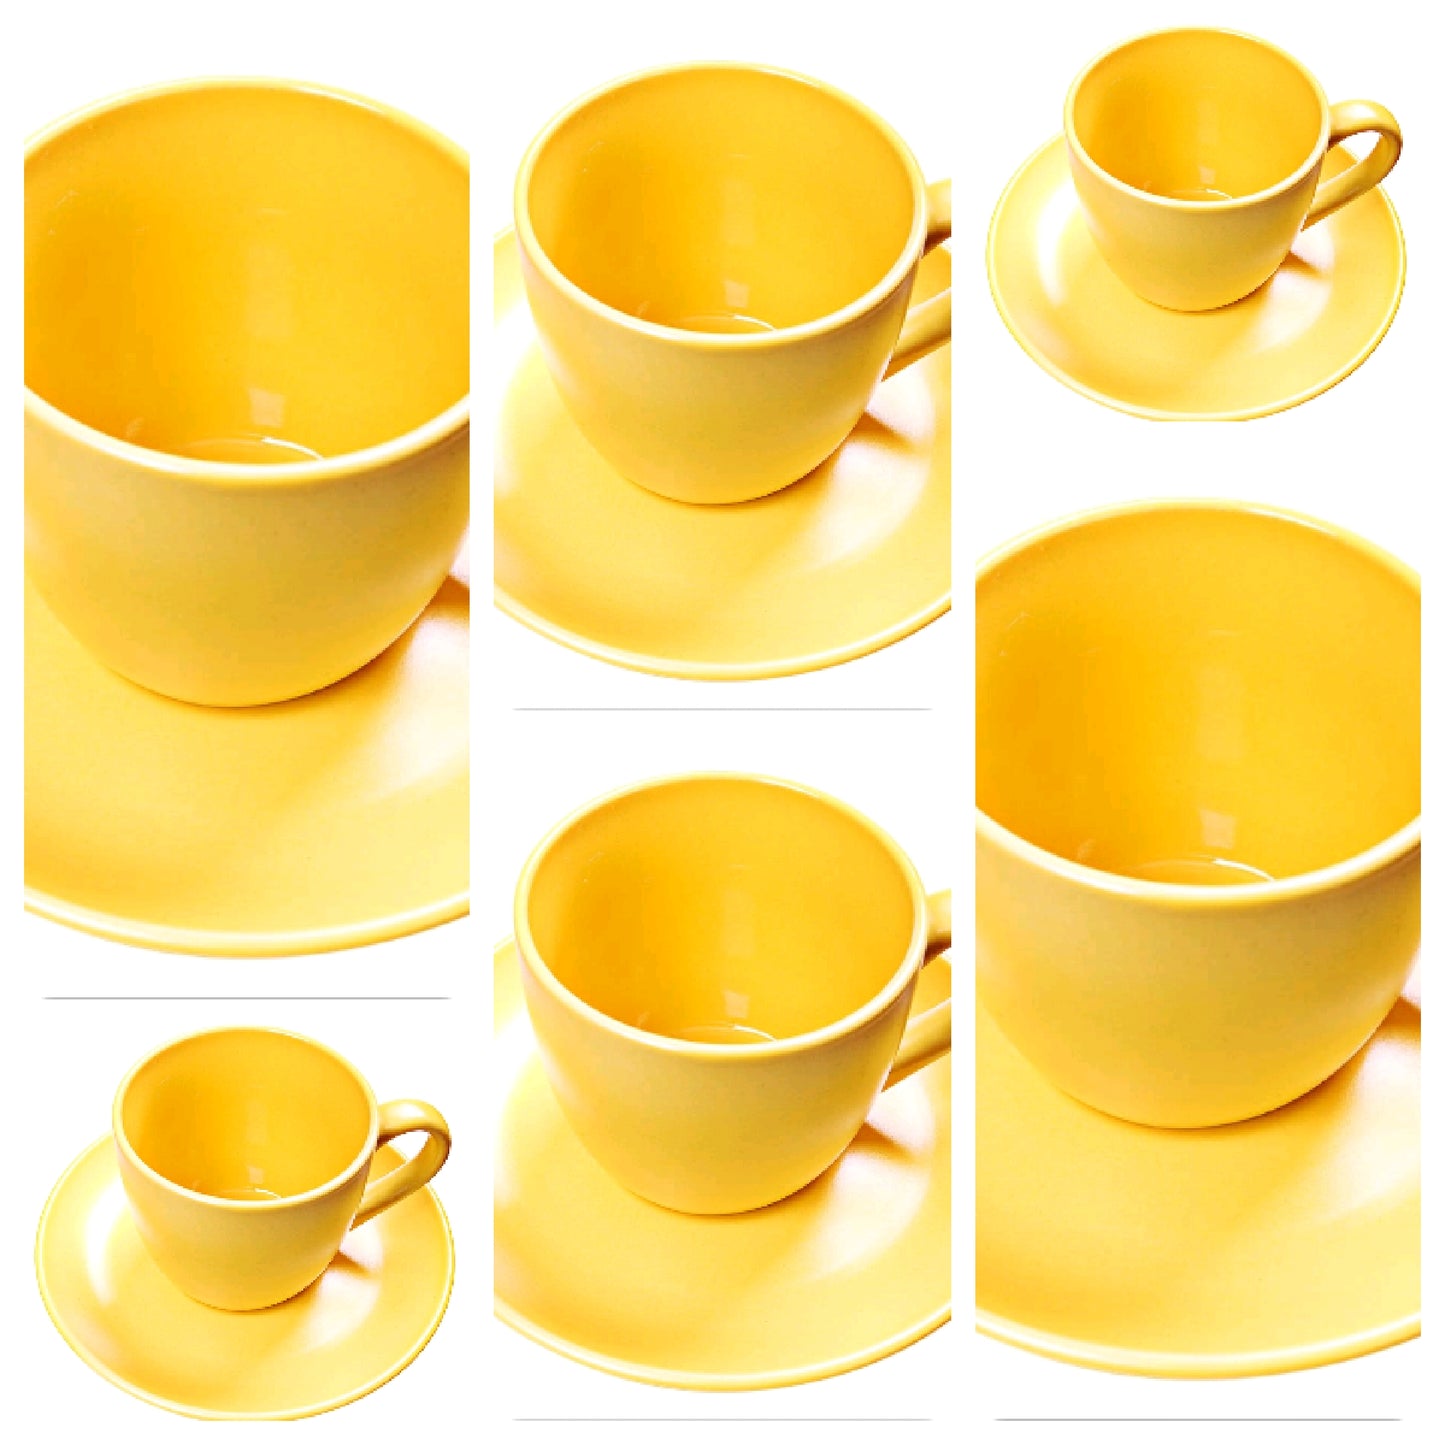 Cup saucer set - Yellow